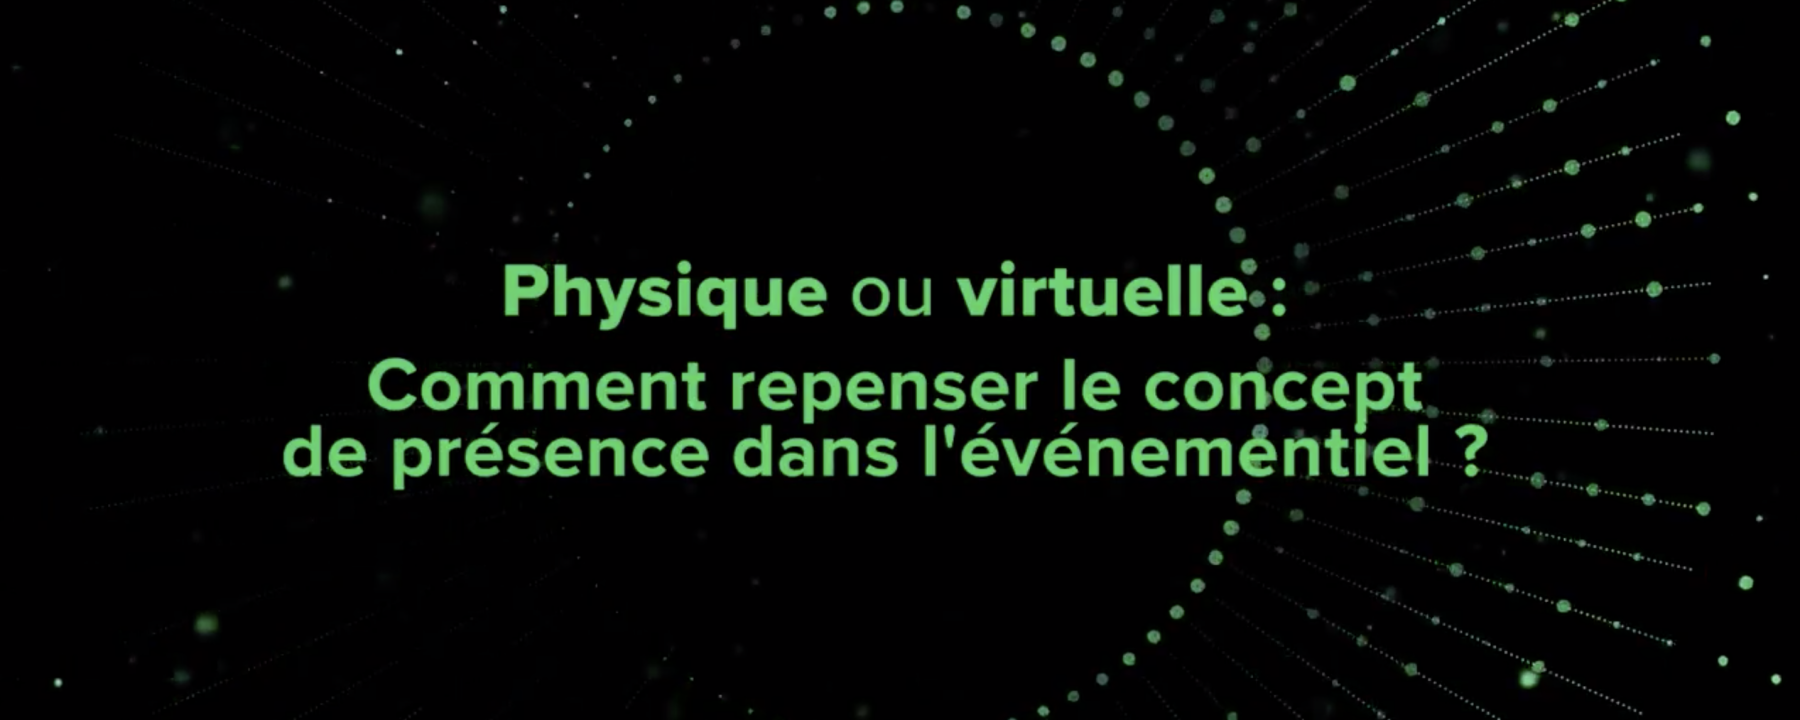 Physique ou virtuelle : comment repenser le concept de présence dans l'événementiel ? 